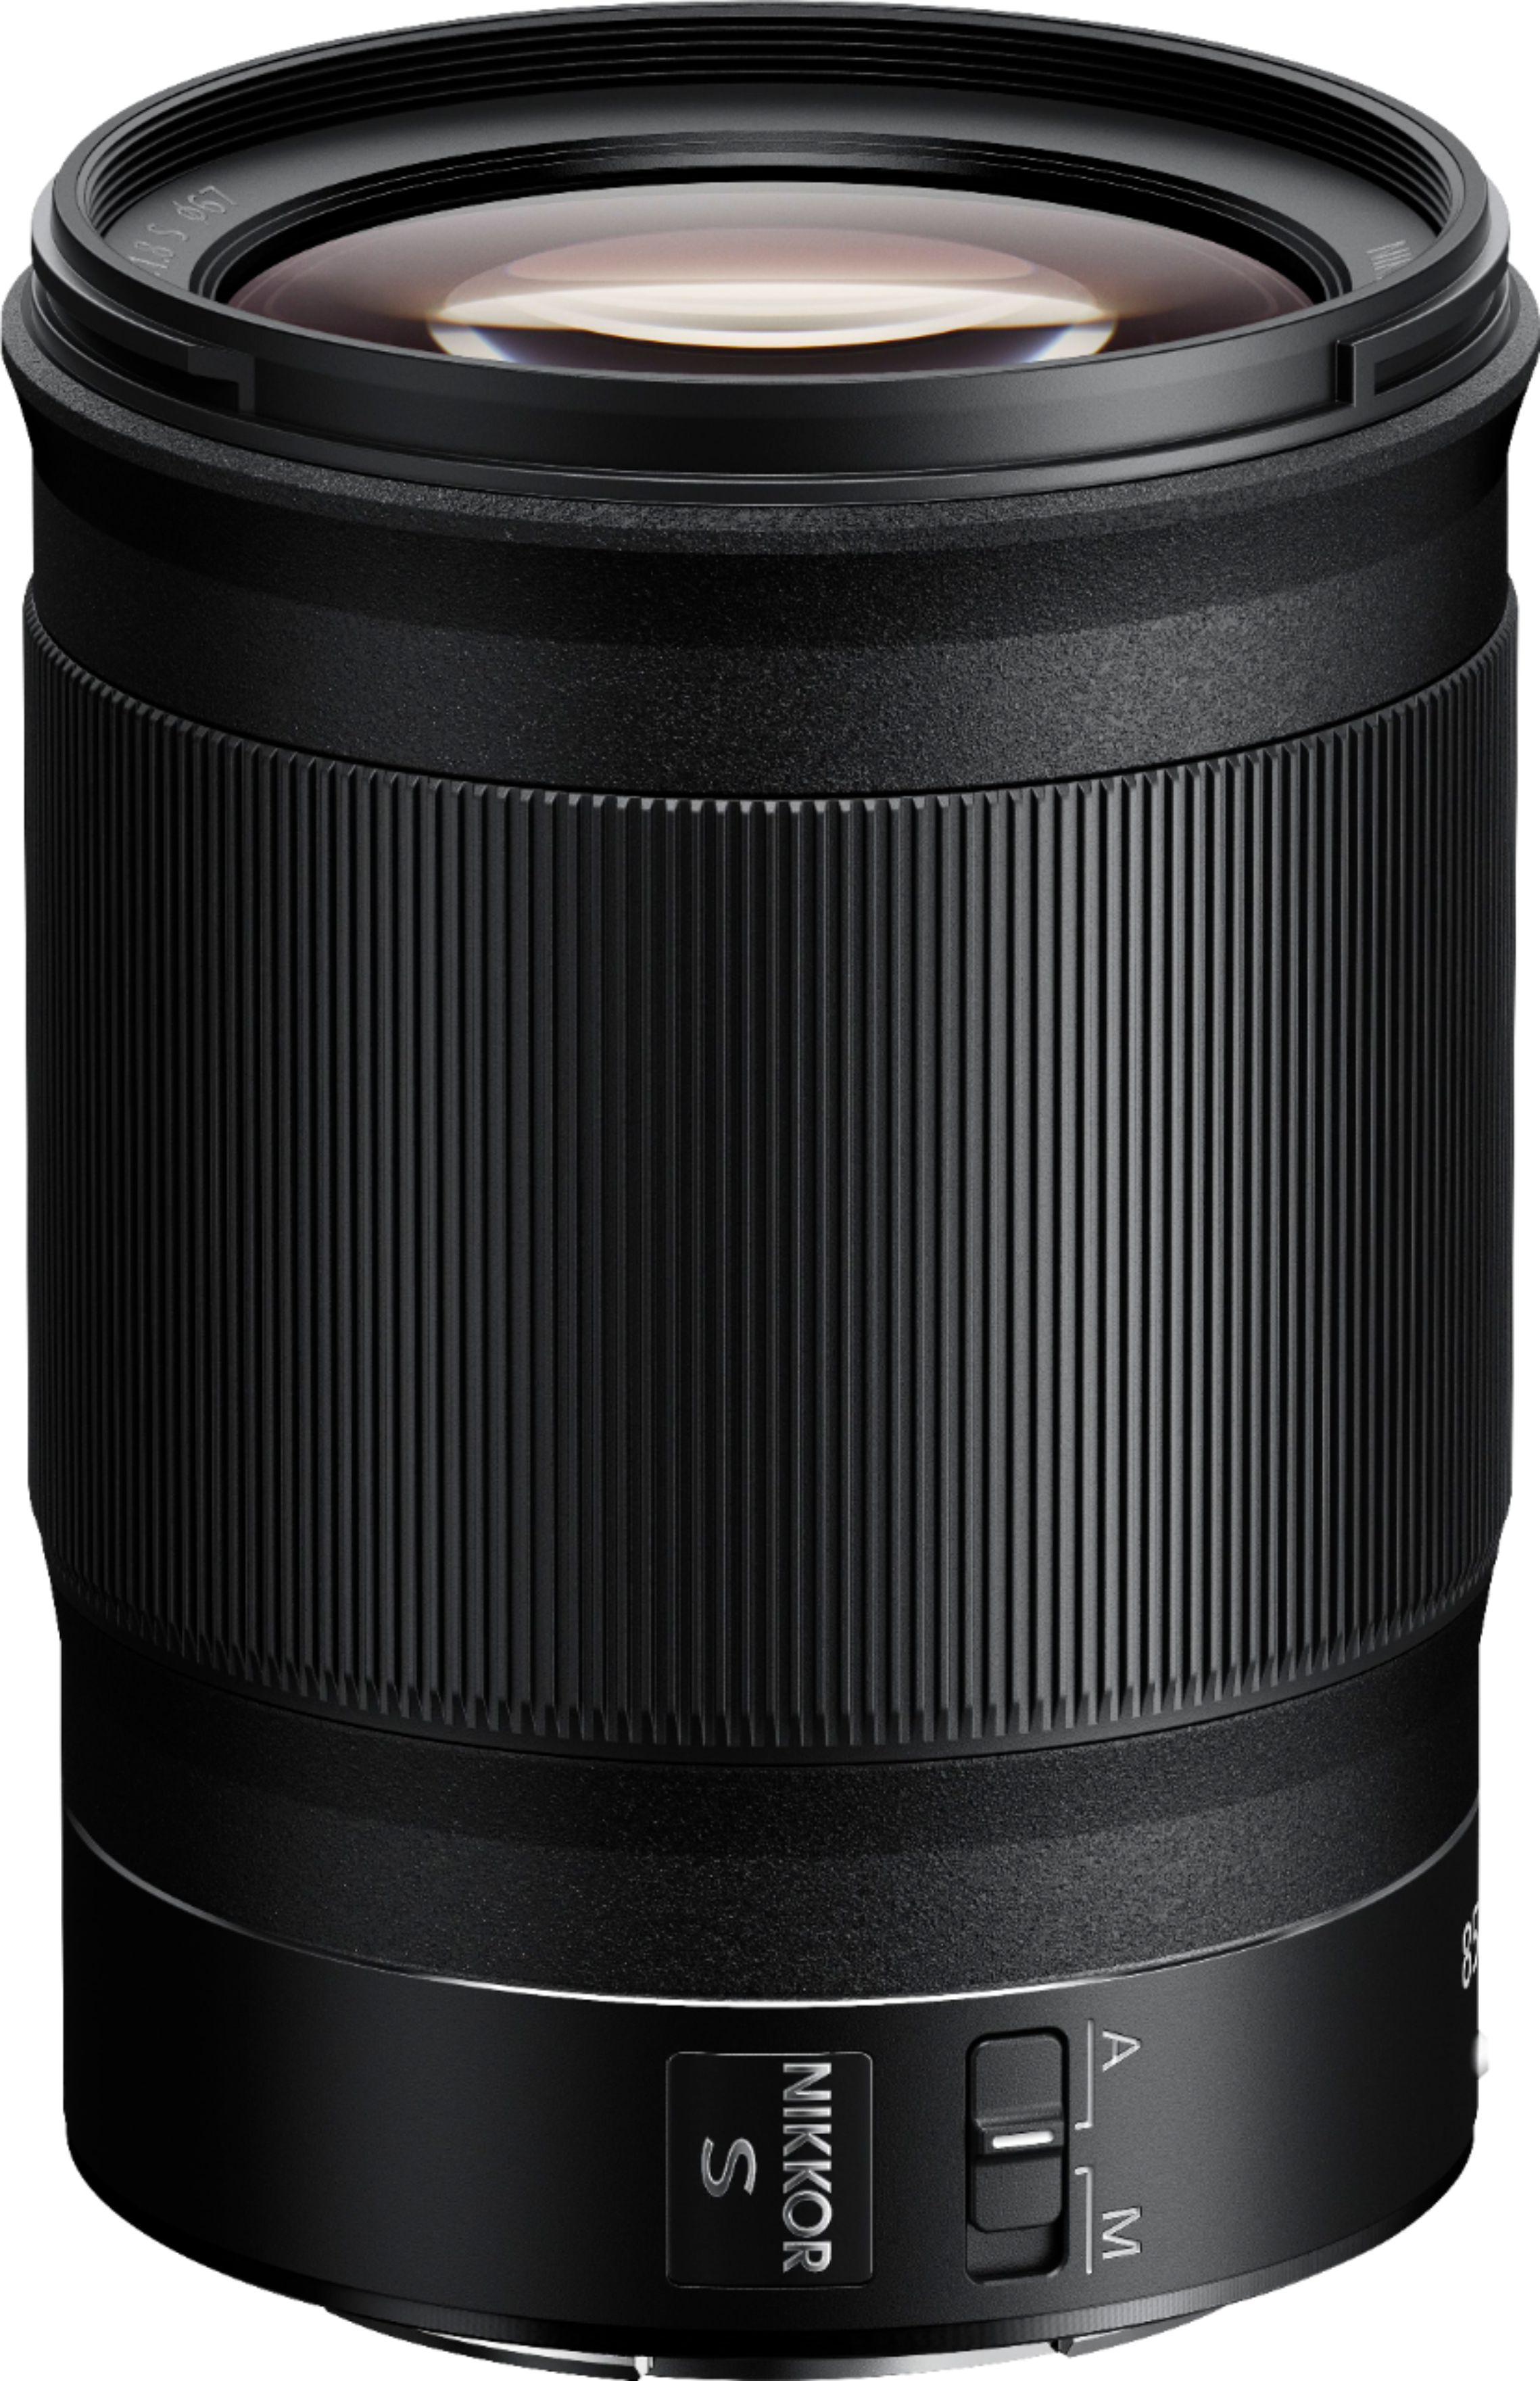 Left View: NIKKOR Z 85mm f/1.8 S Telephoto Lens for Nikon Z Cameras - Black